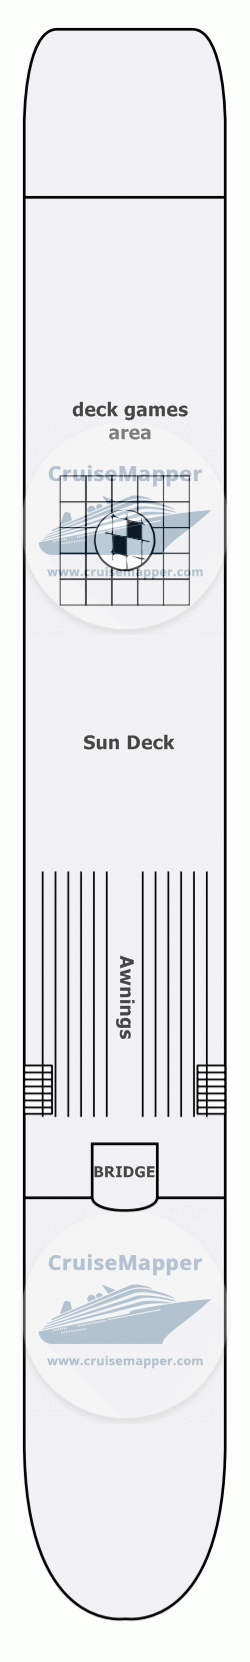 MS Heidelberg Deck 04 - Sun